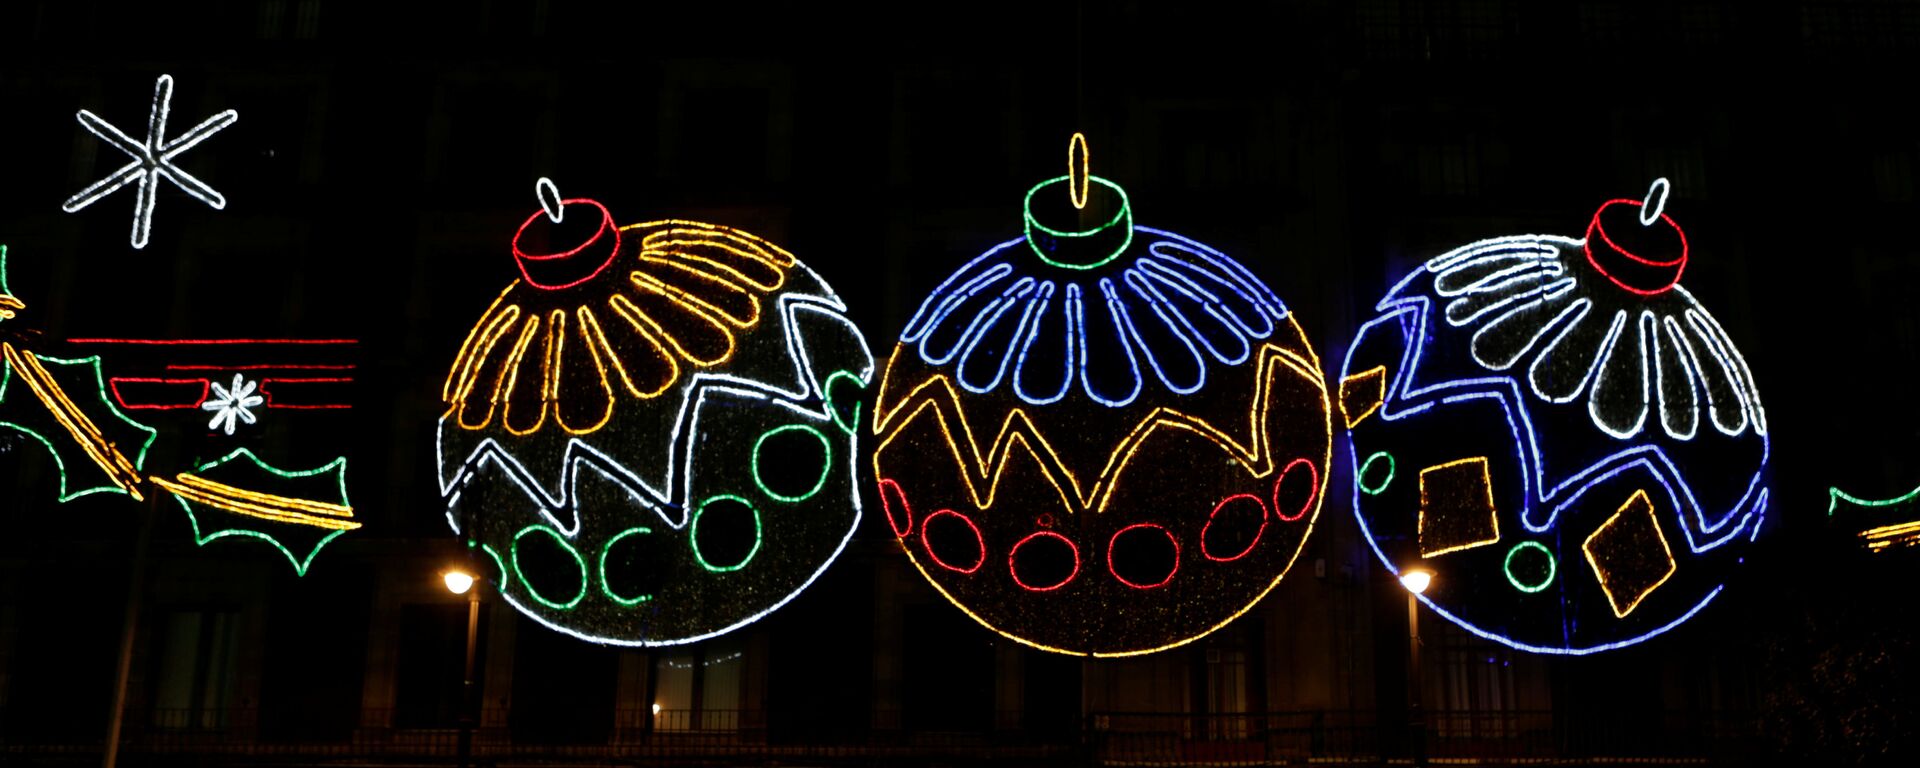 Decoraciones con luces como parte de las celebraciones de Navidad en la Ciudad de México - Sputnik Mundo, 1920, 24.12.2016